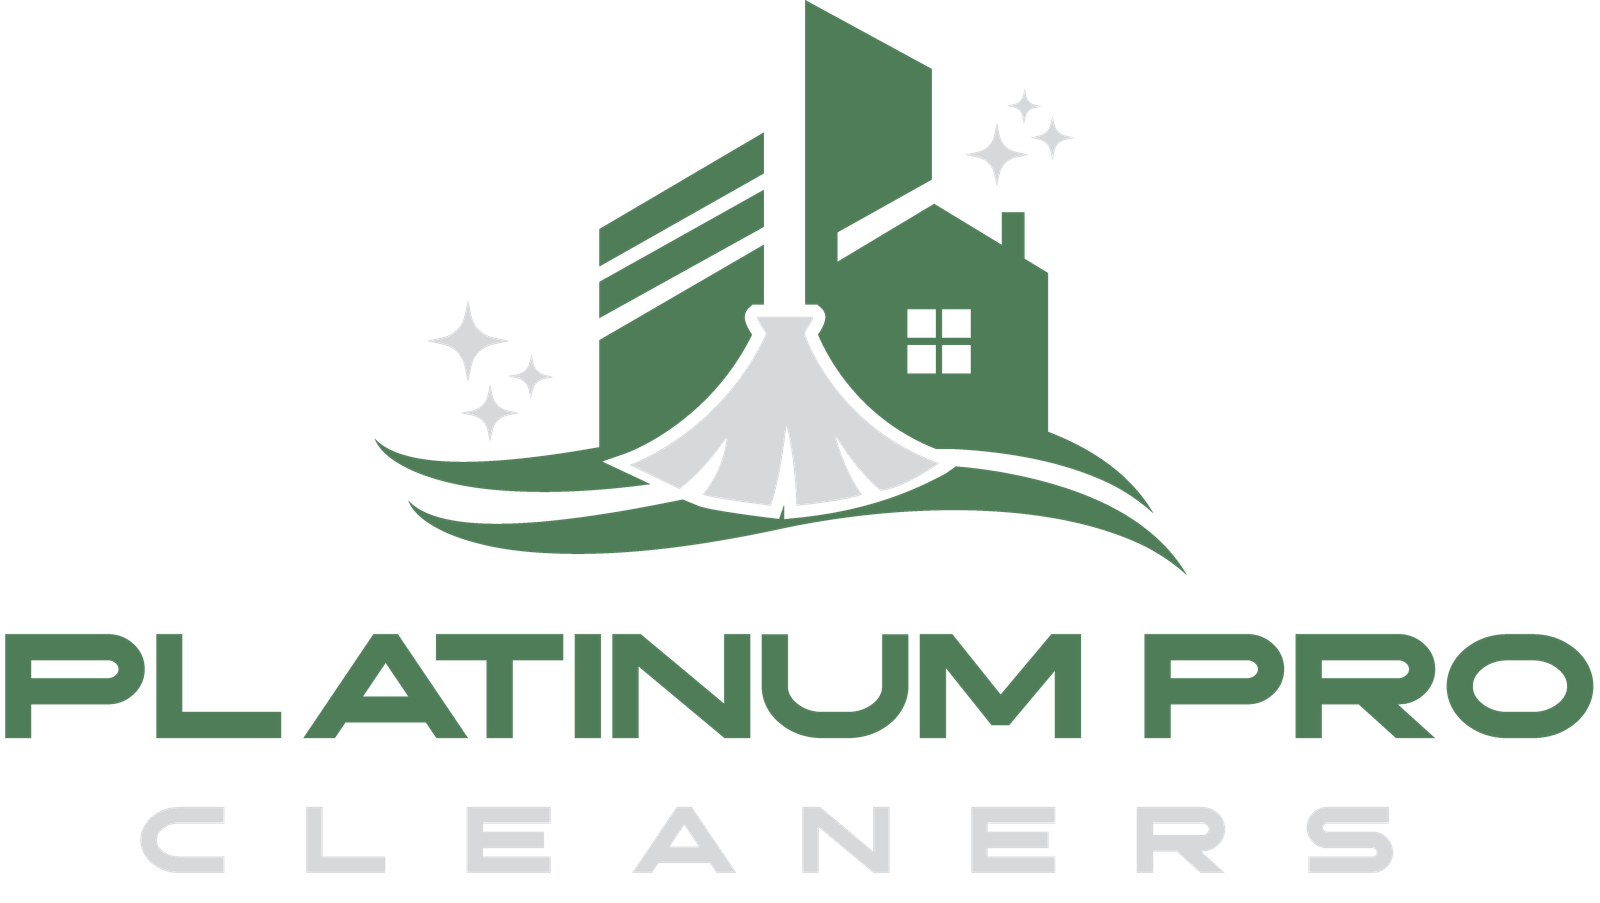 platinum pro cleaners logo